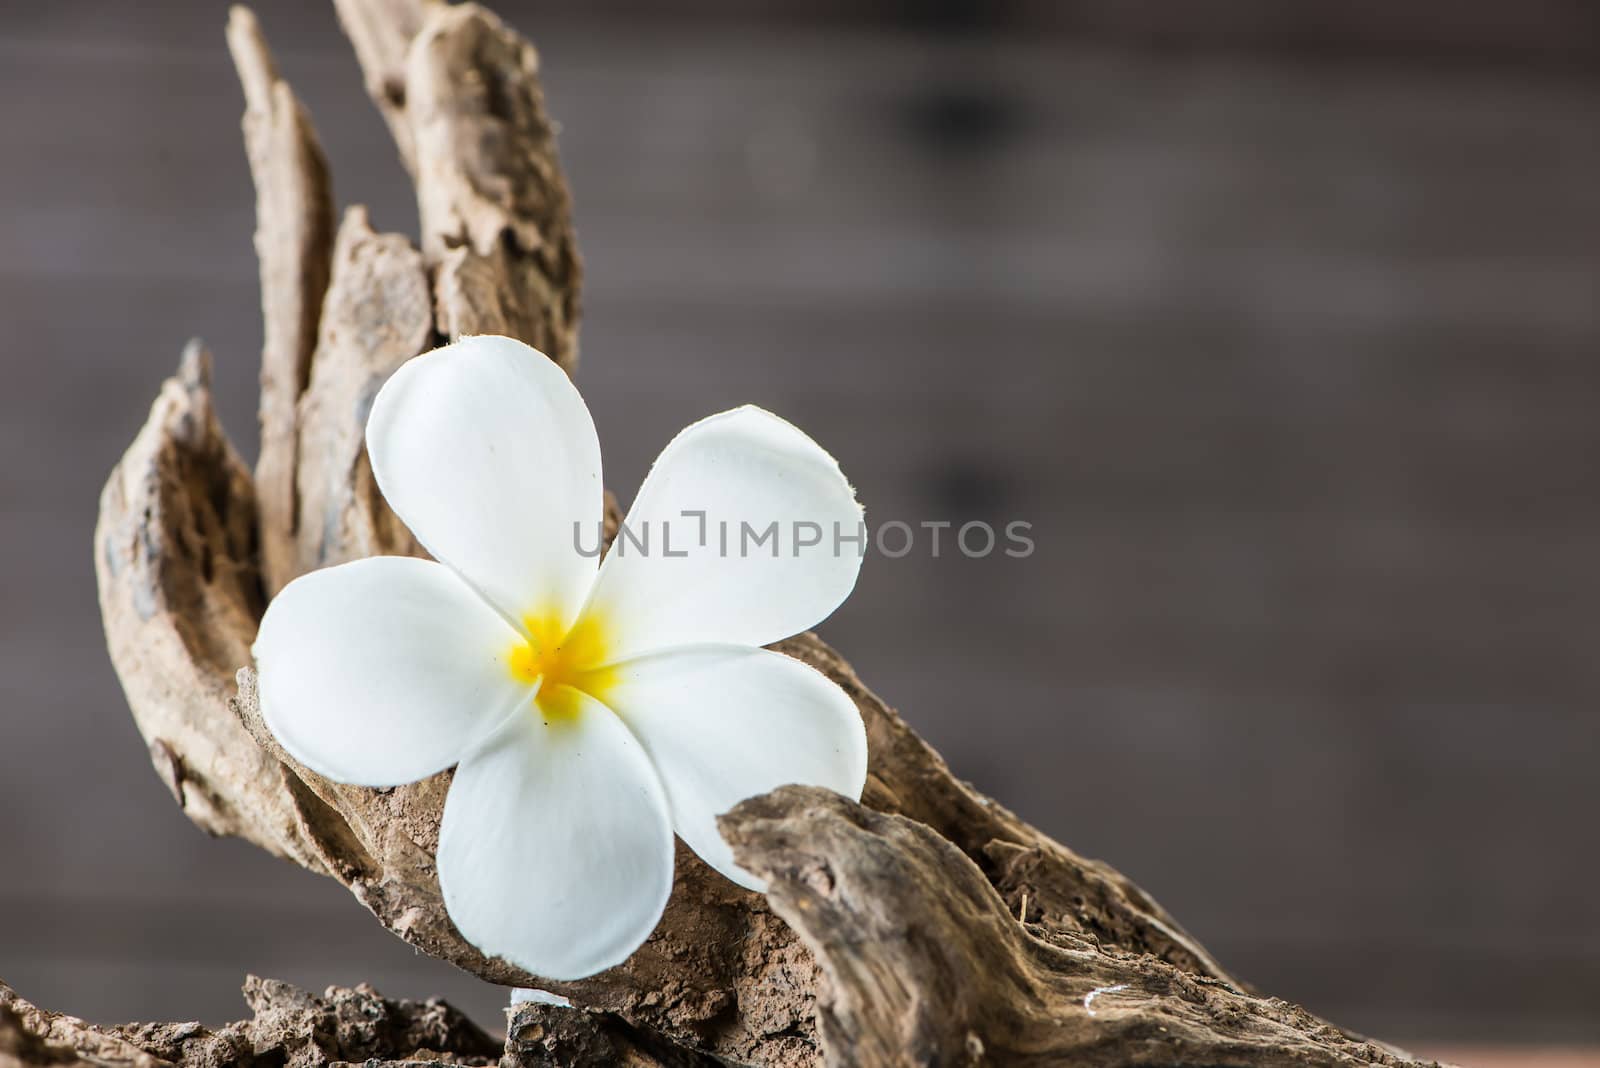 frangipani flower (Plumeria) on wood by wmitrmatr